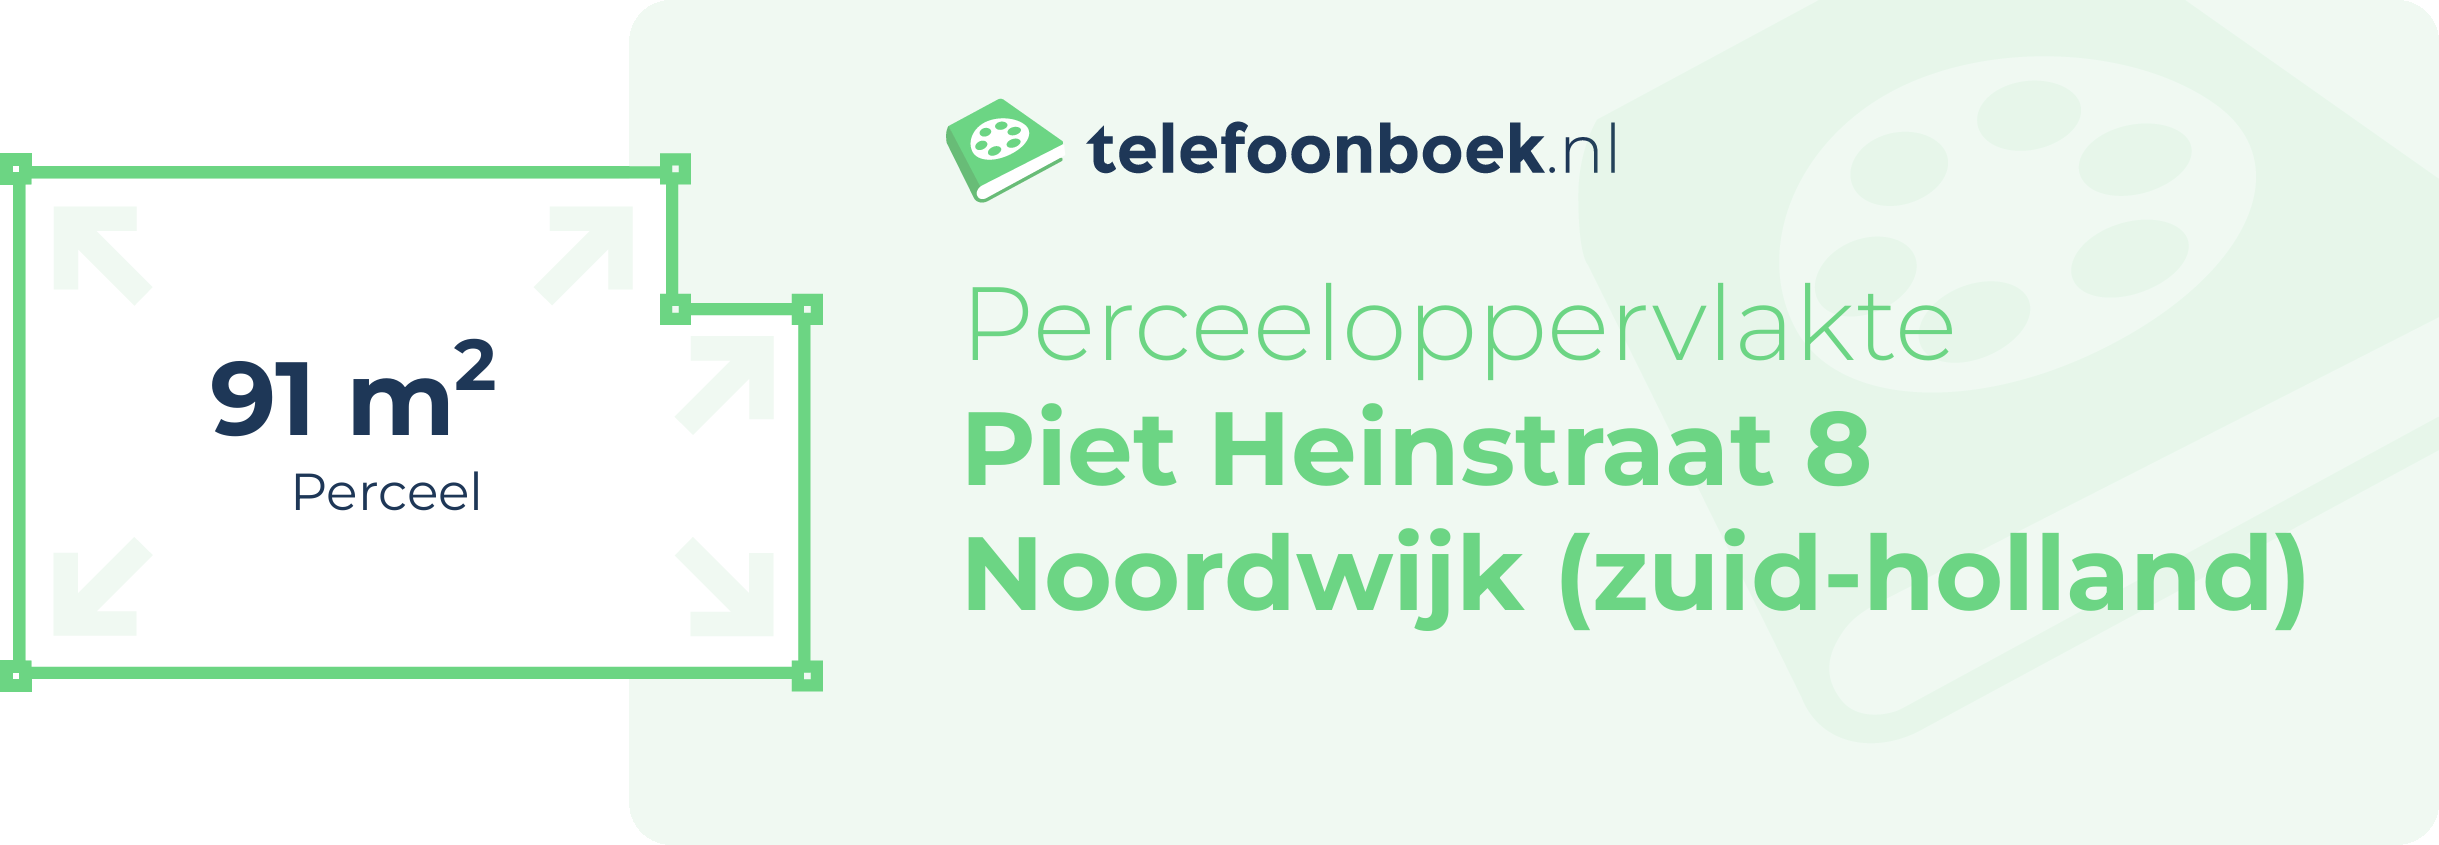 Perceeloppervlakte Piet Heinstraat 8 Noordwijk (Zuid-Holland)